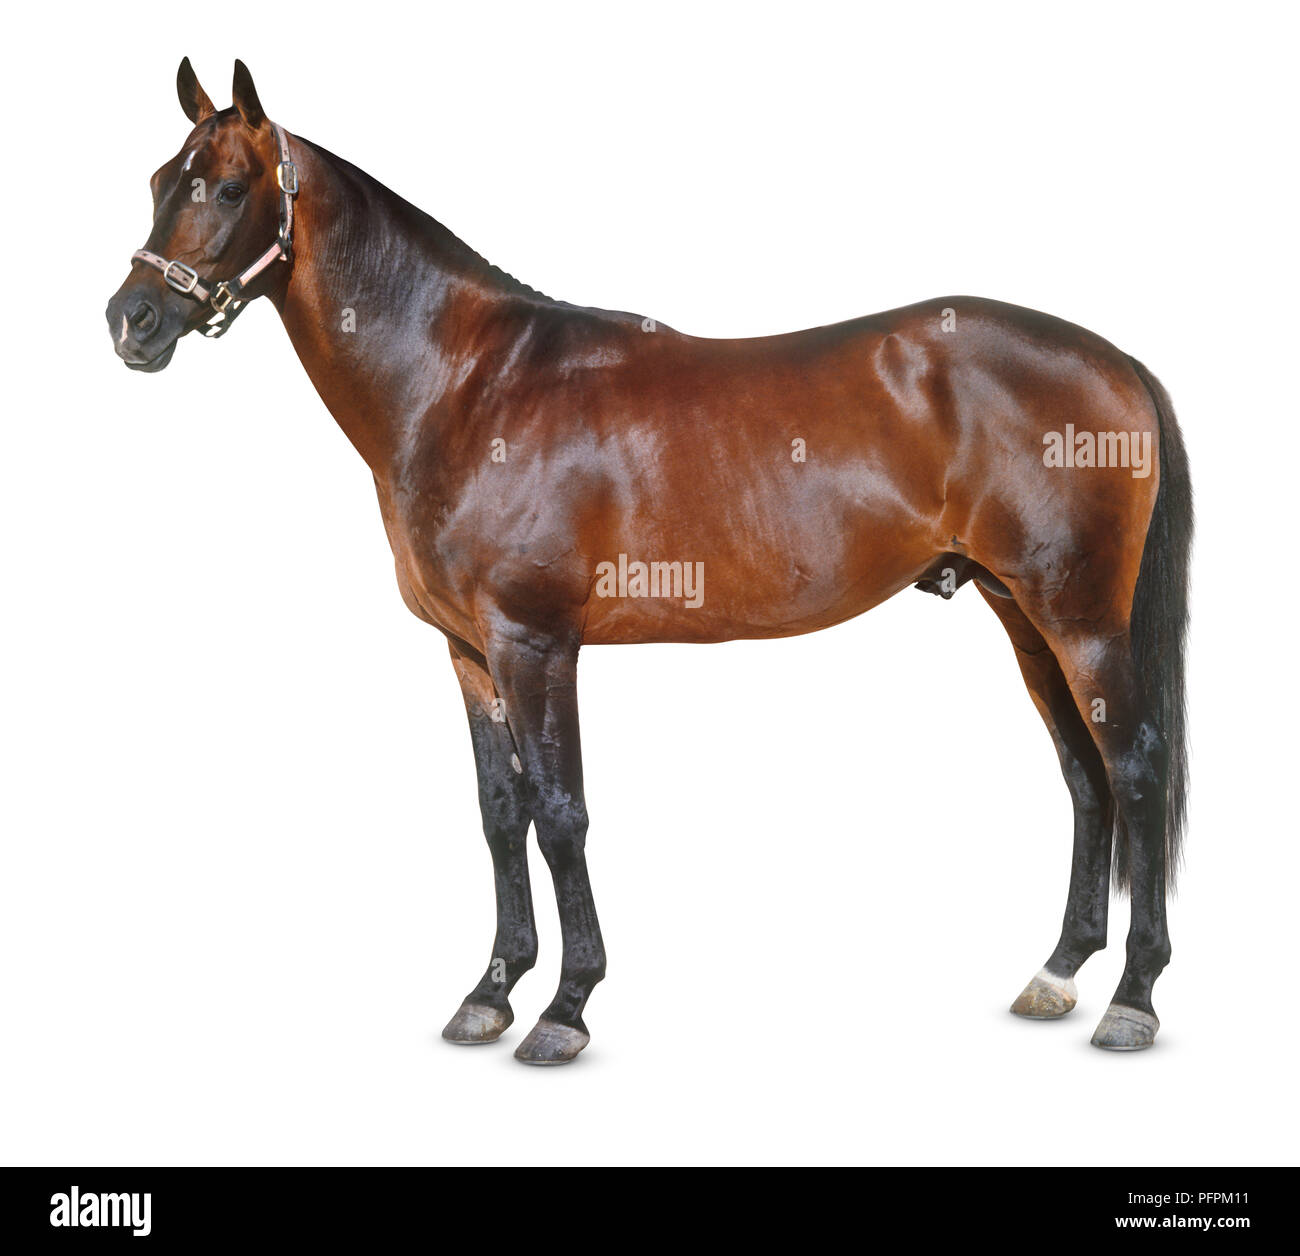 Australian stock horse, debout, vue de côté Banque D'Images